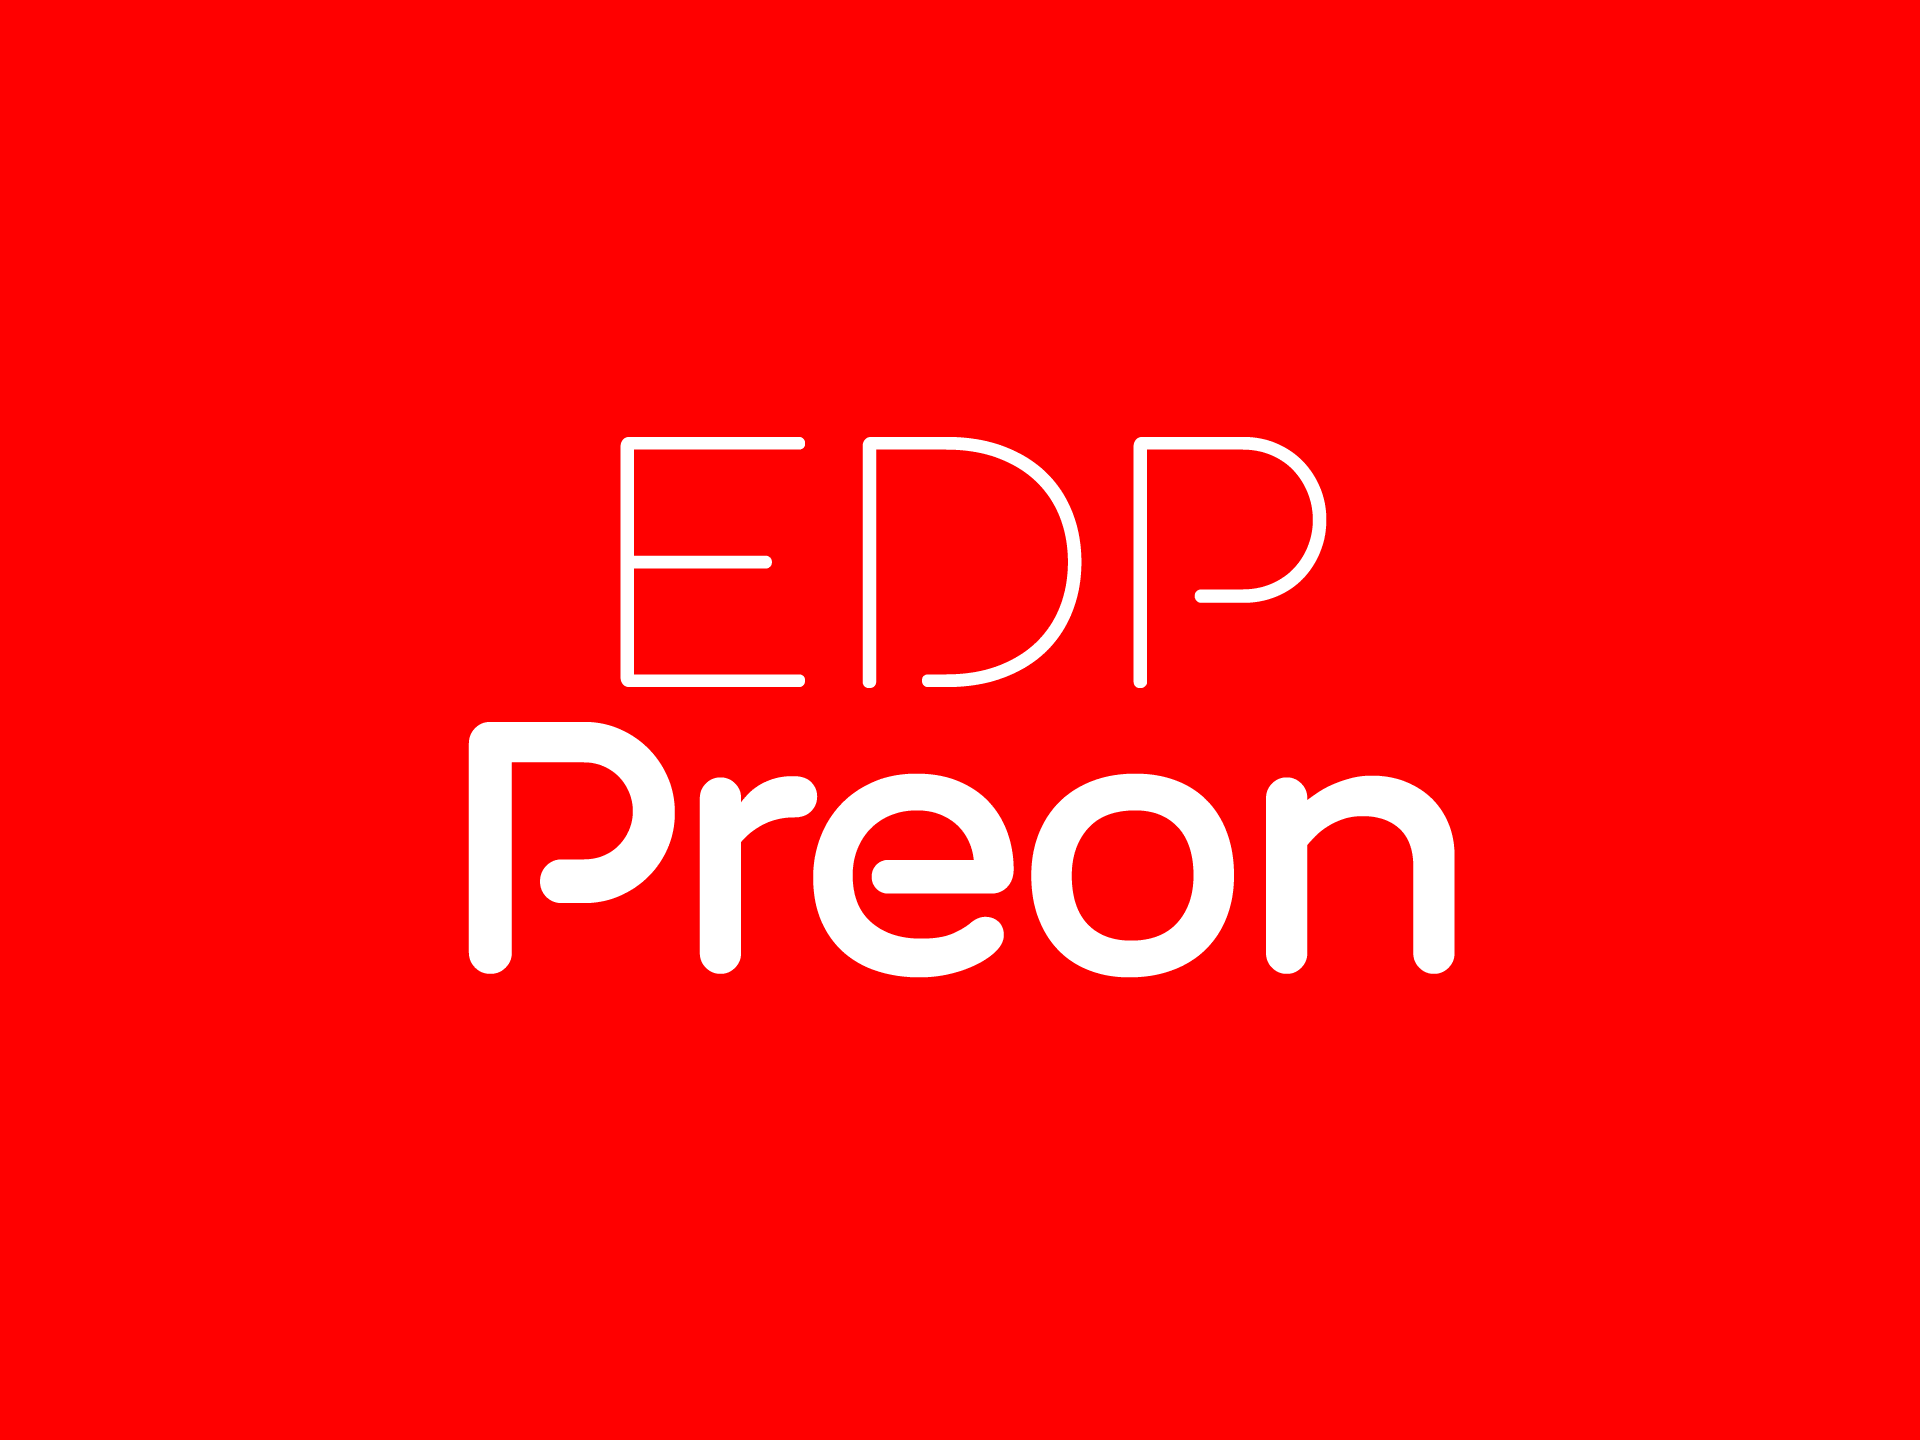 Custom Fonts: EDP